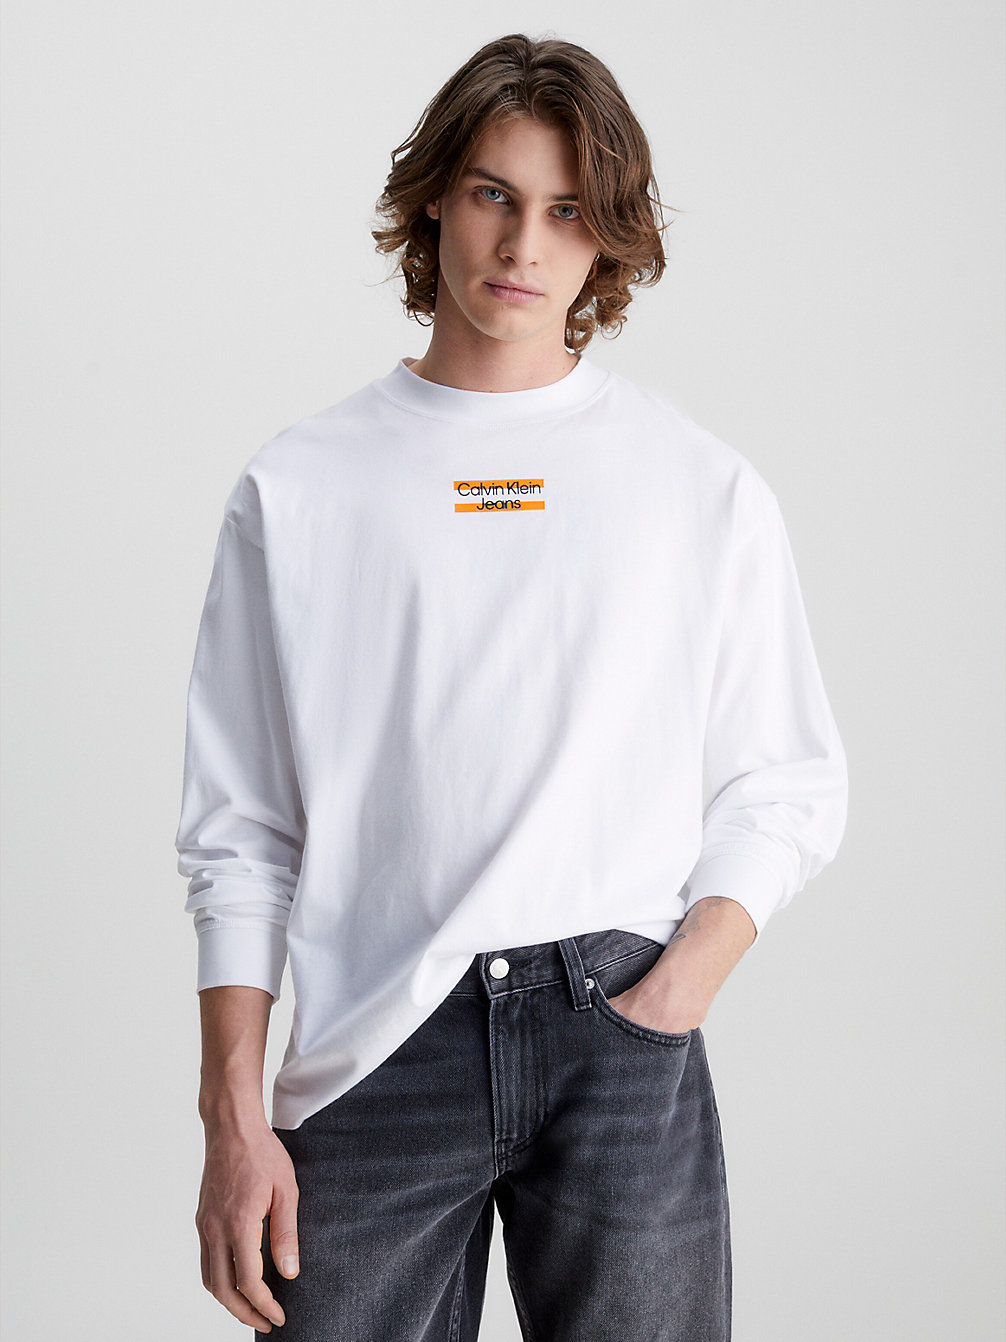 BRIGHT WHITE Oversized Langarmshirt undefined Herren Calvin Klein